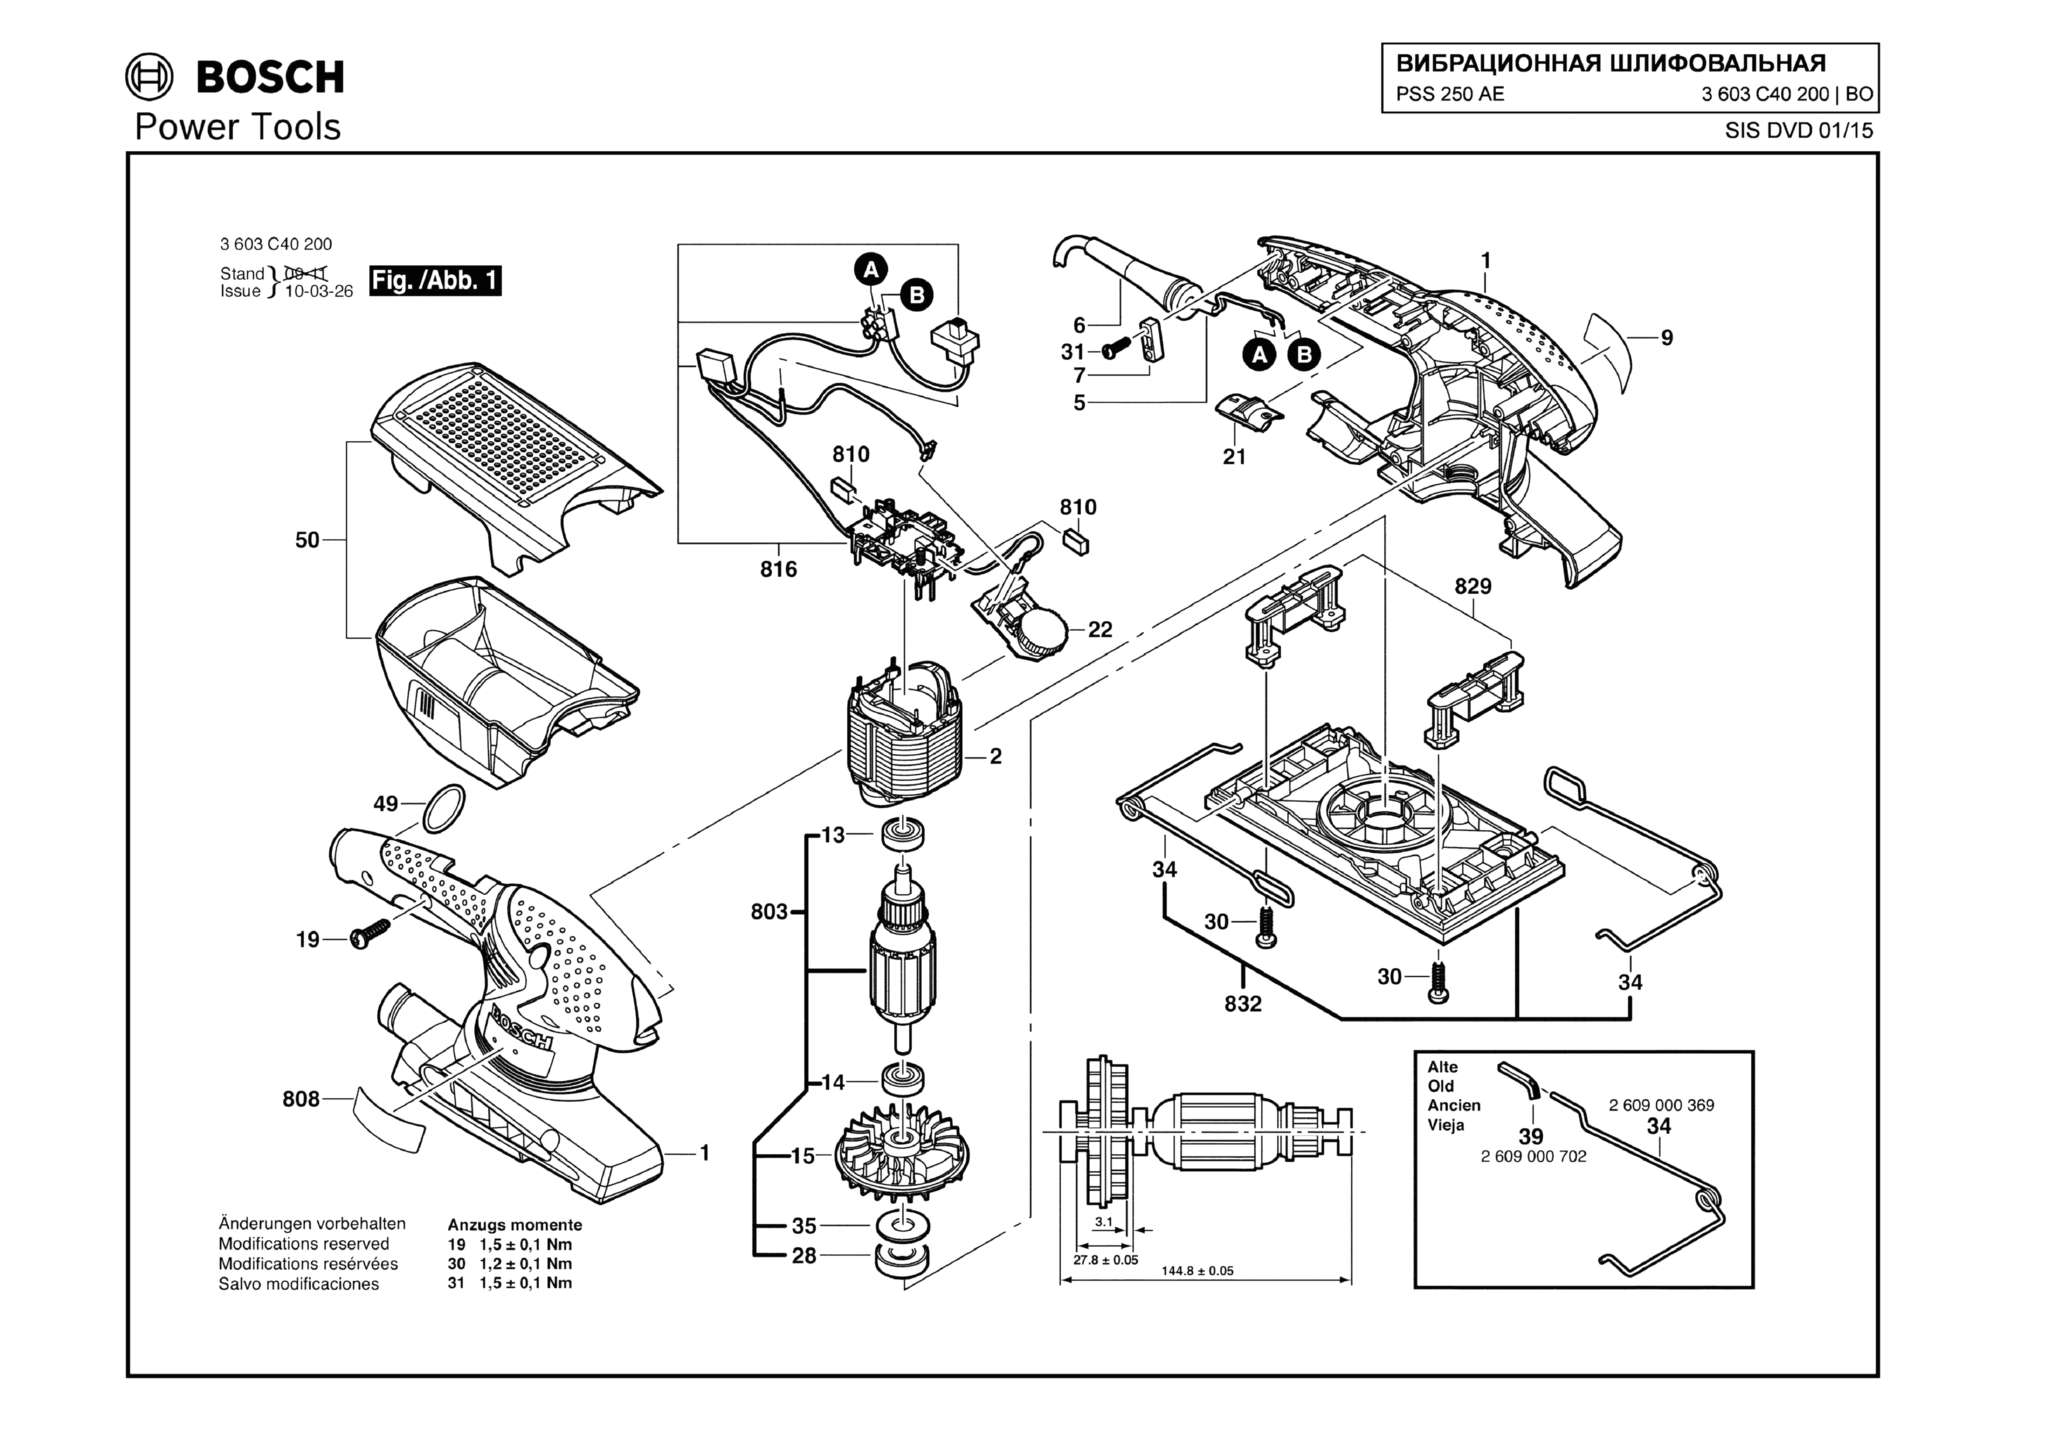 Запчасти, схема и деталировка Bosch PSS 250 AE (ТИП 3603C40200)